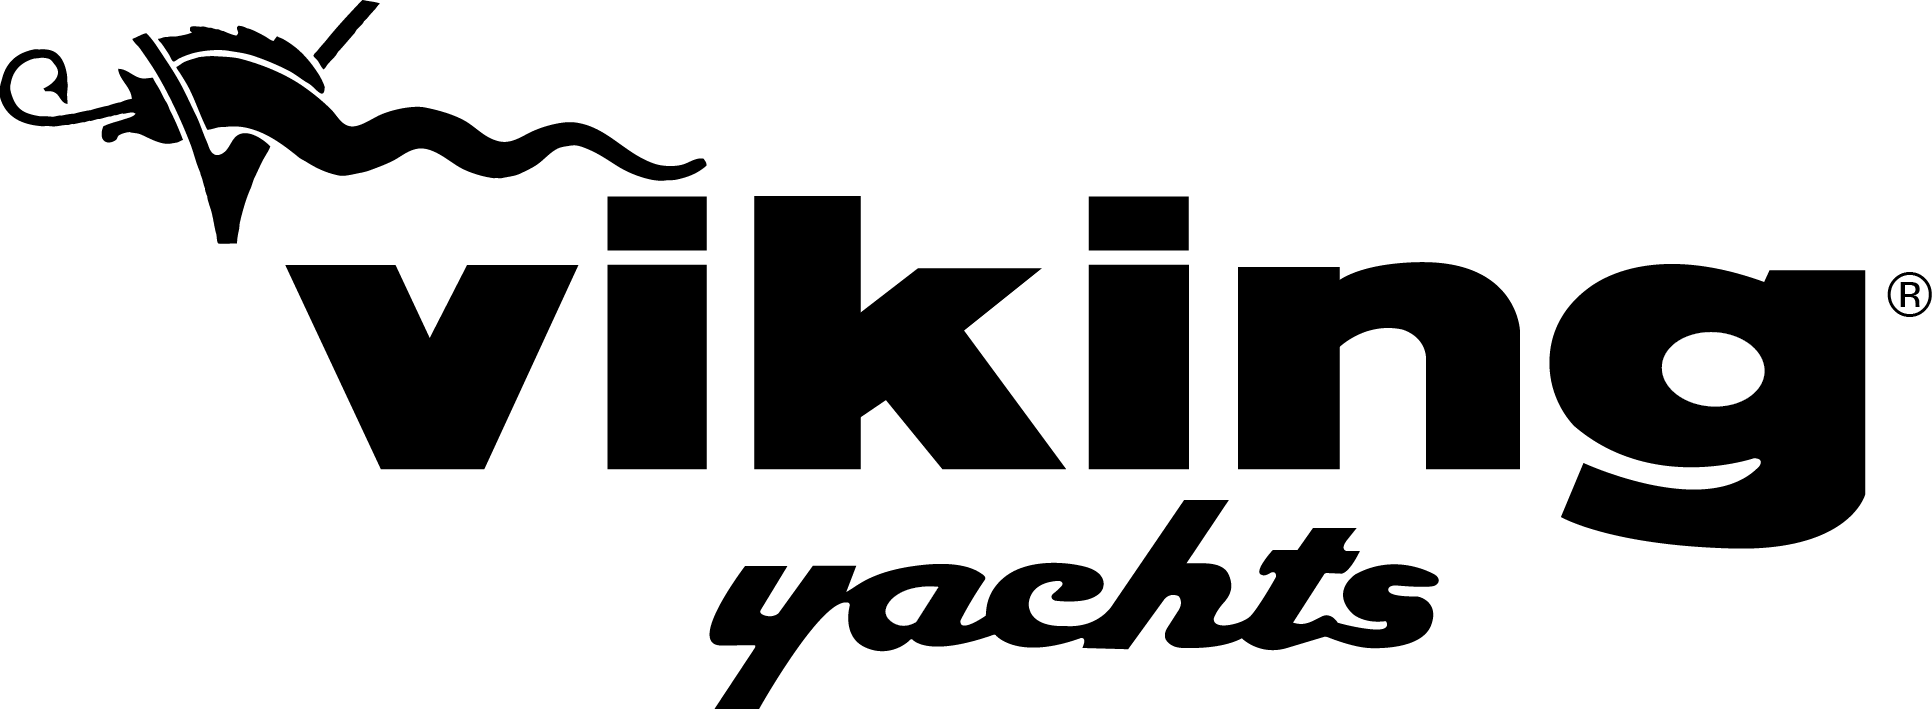 Catalina Yachts logo